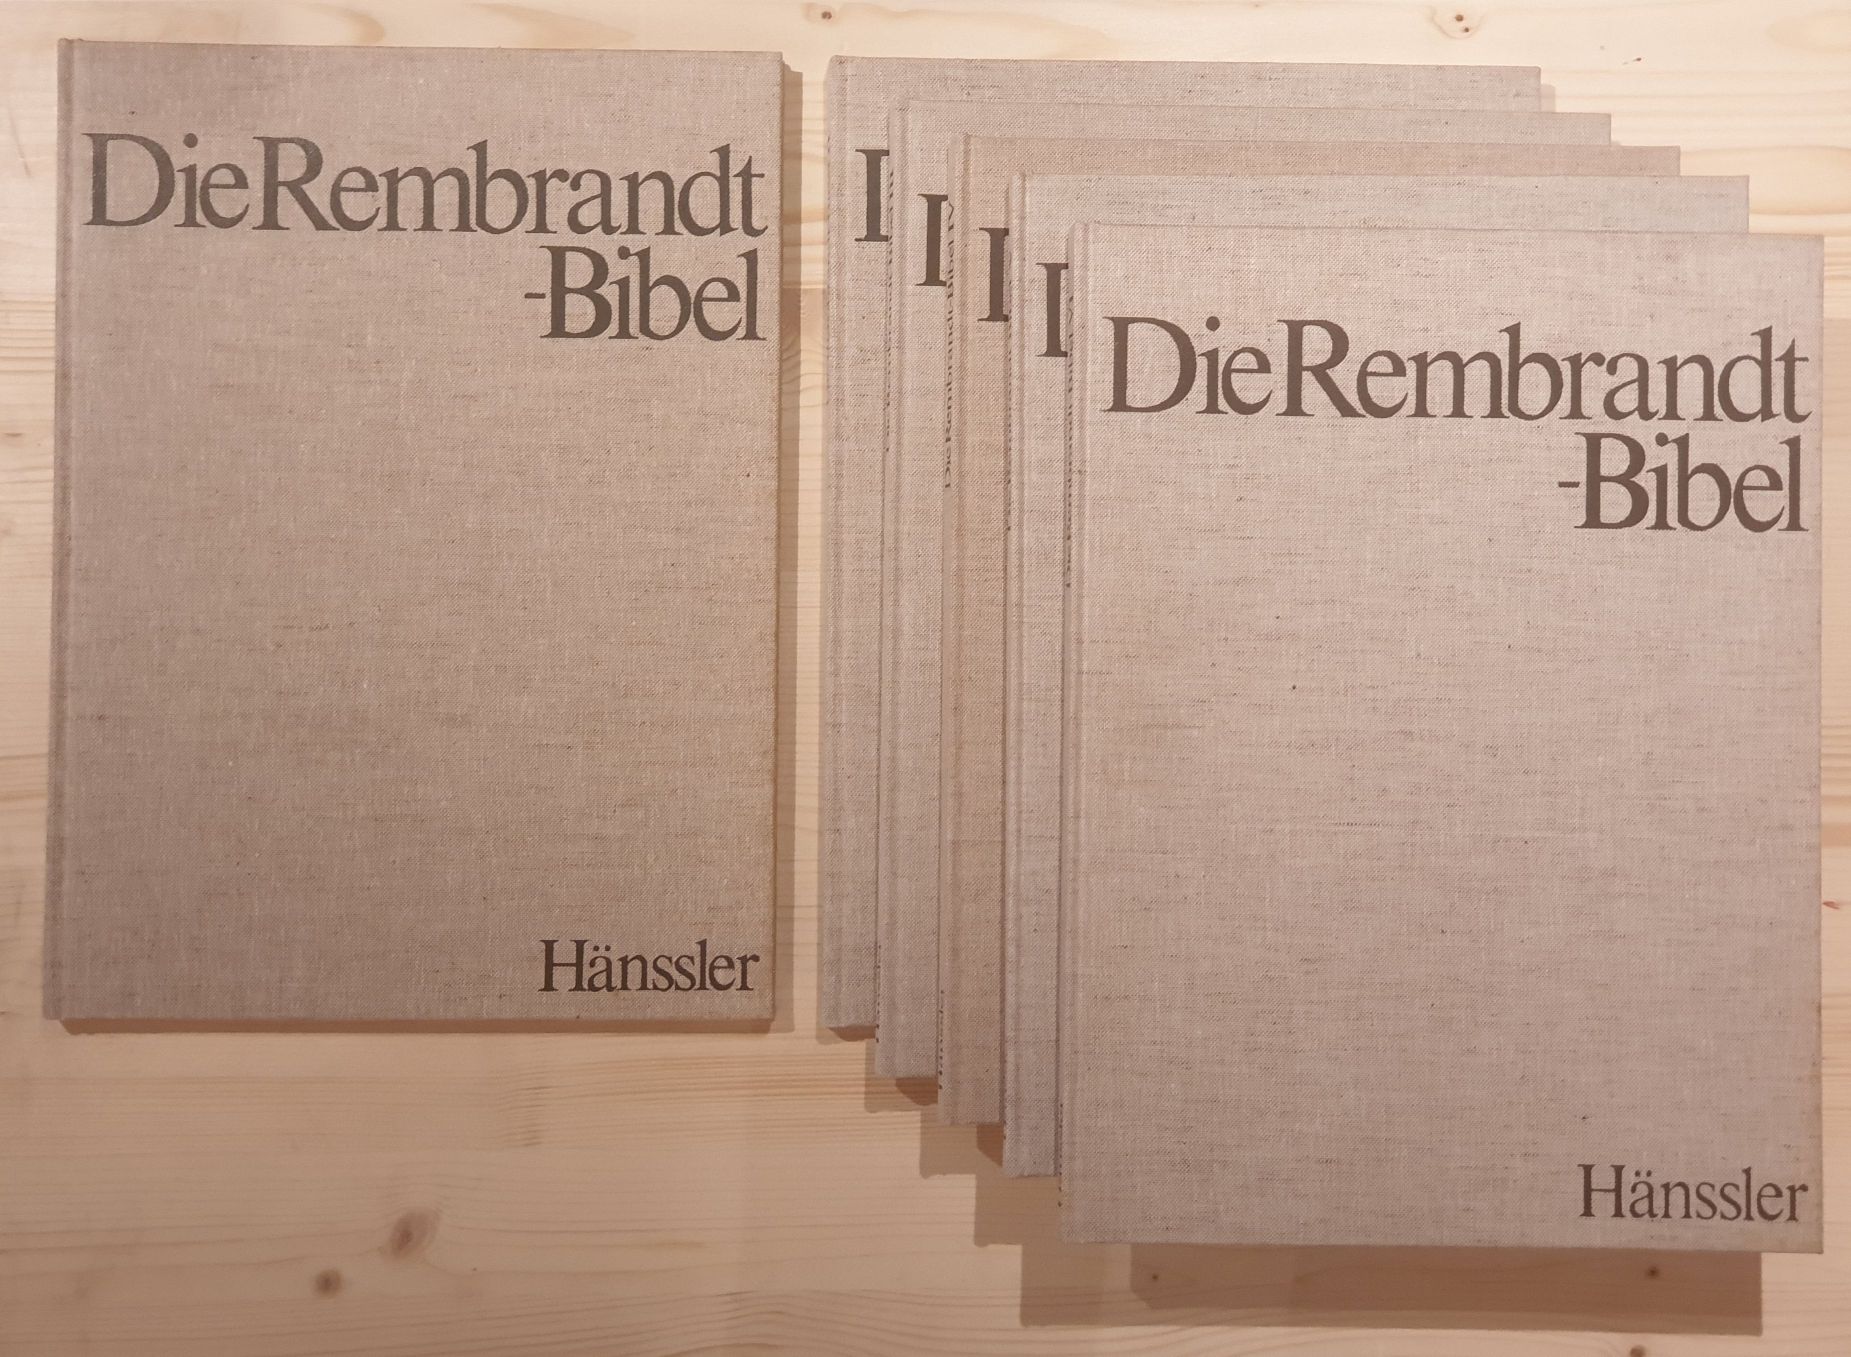 Hoekstra, Hidde (Hrsg.):  Die Rembrandt-Bibel. 